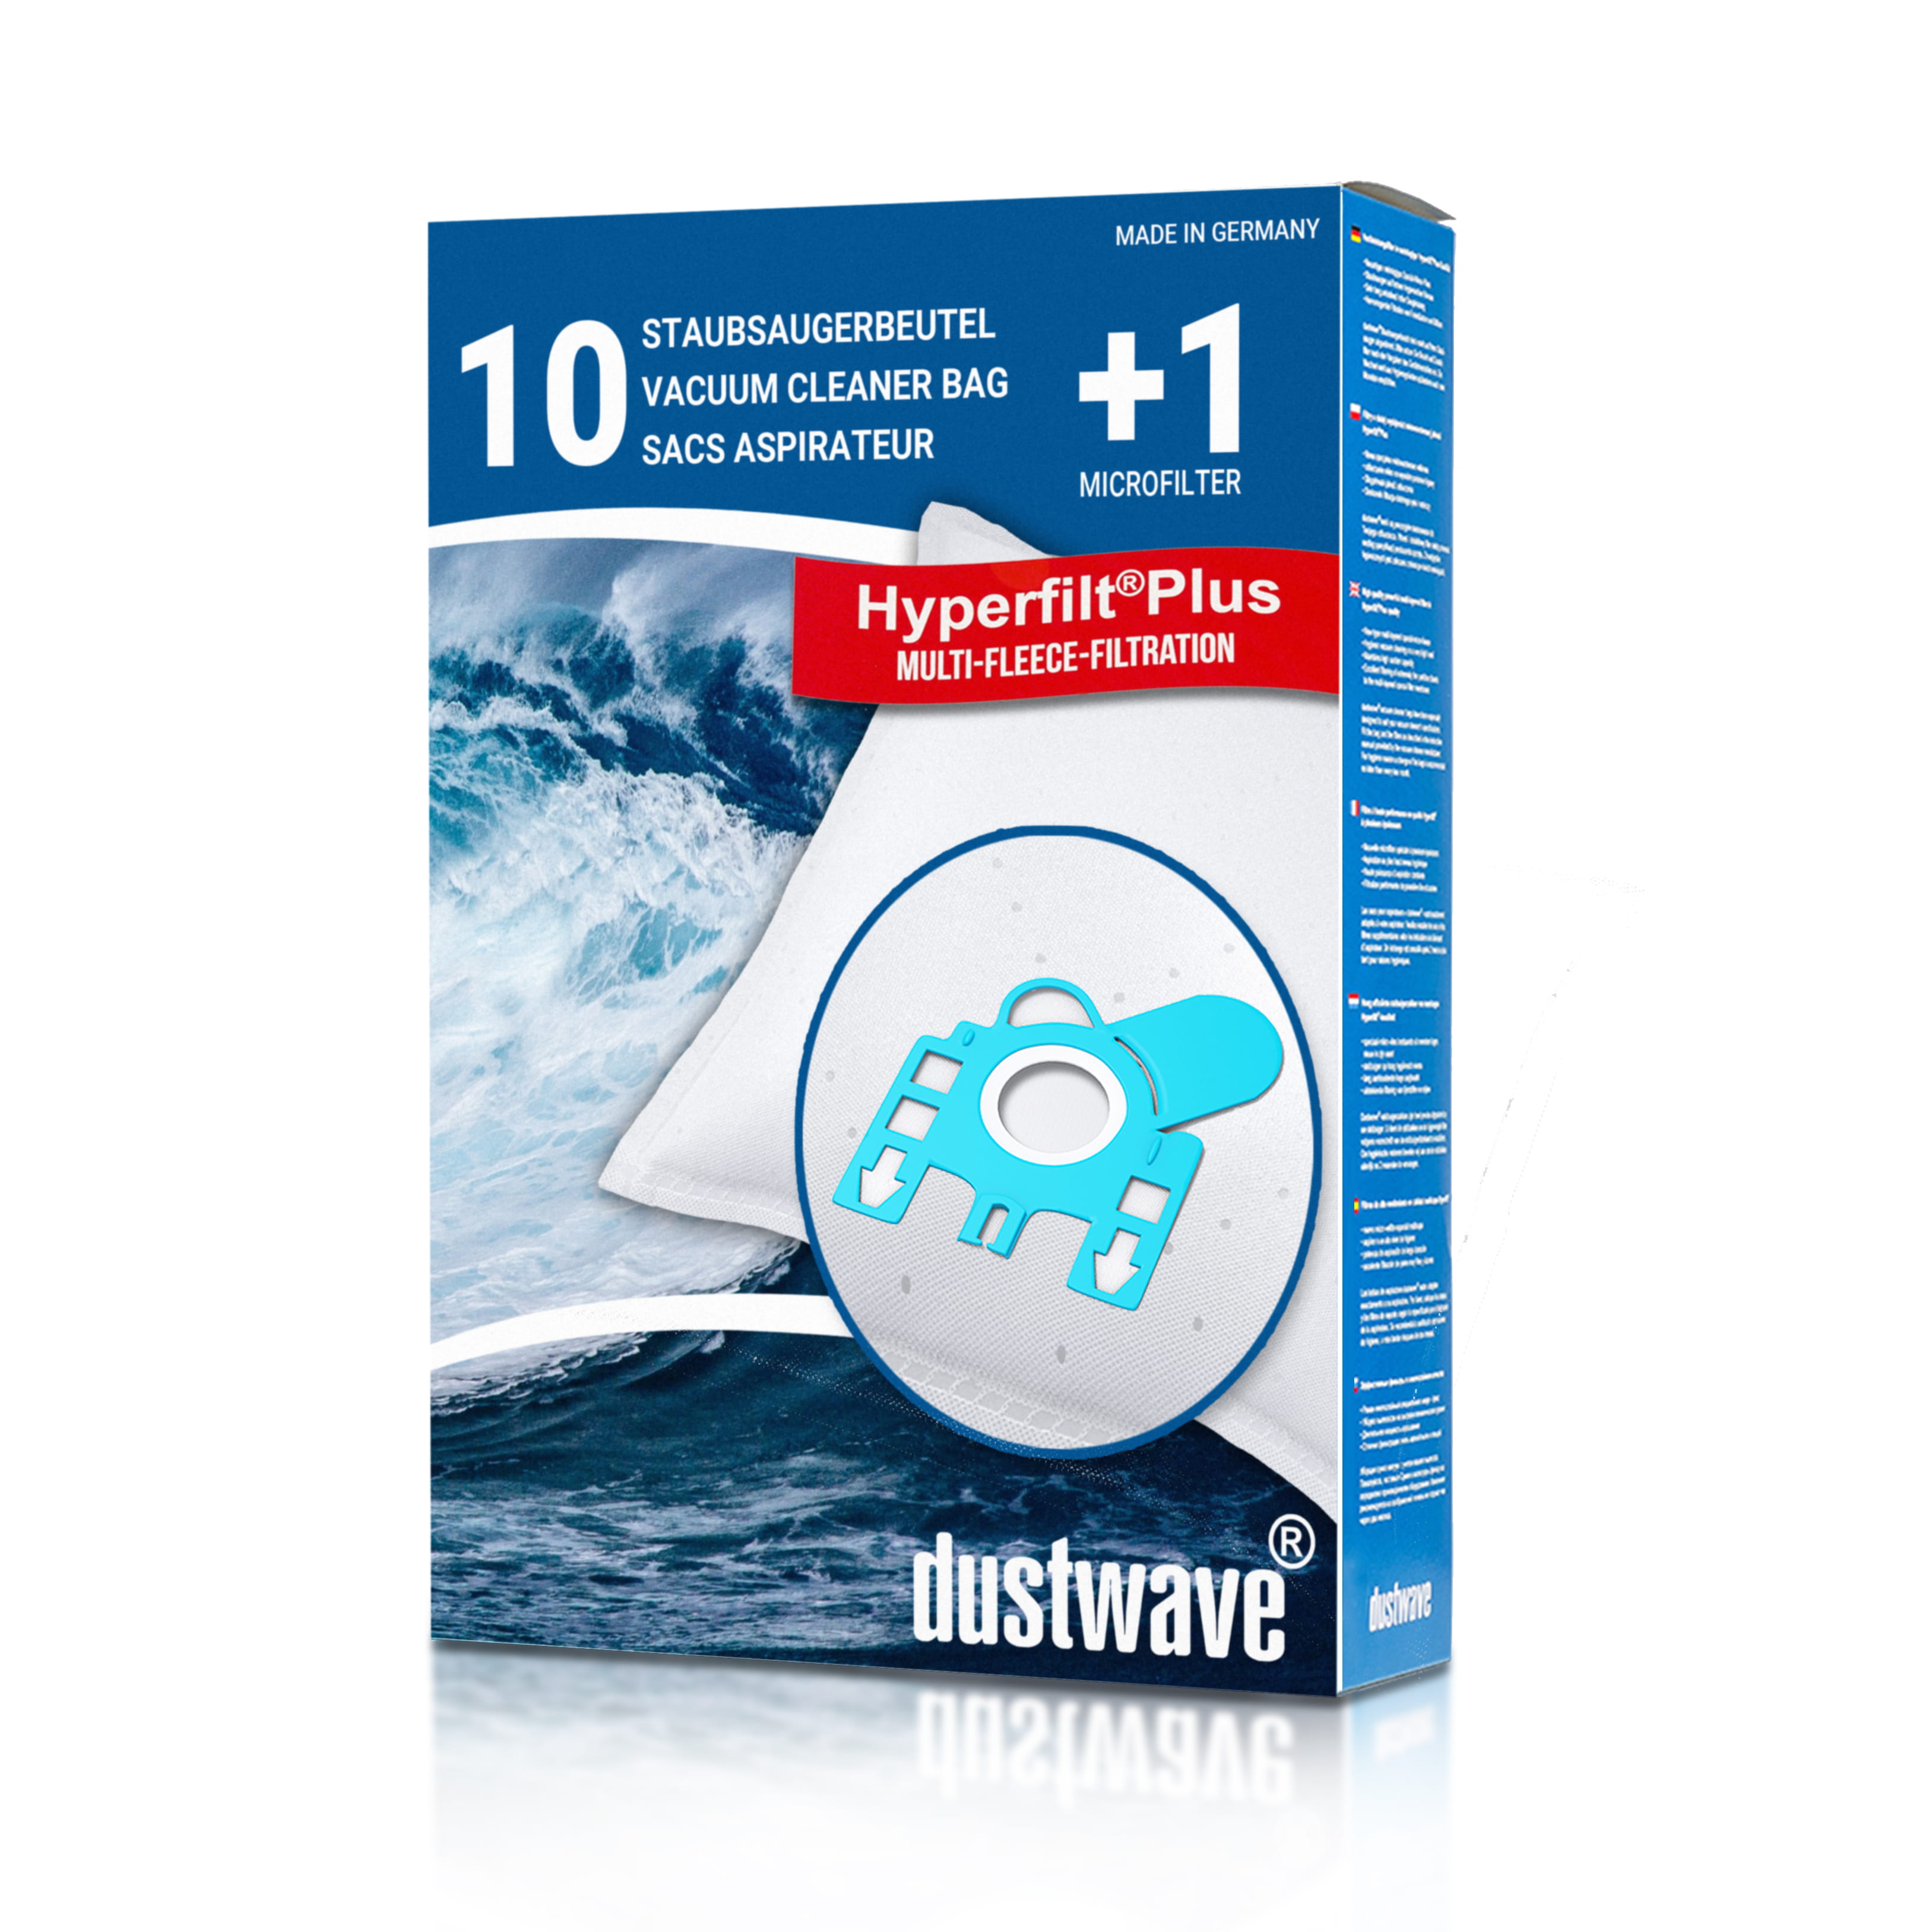 Dustwave® 10 Staubsaugerbeutel für Hoover TP 5210 - TP5299 Telios Serie - hocheffizient, mehrlagiges Mikrovlies mit Hygieneverschluss - Made in Germany